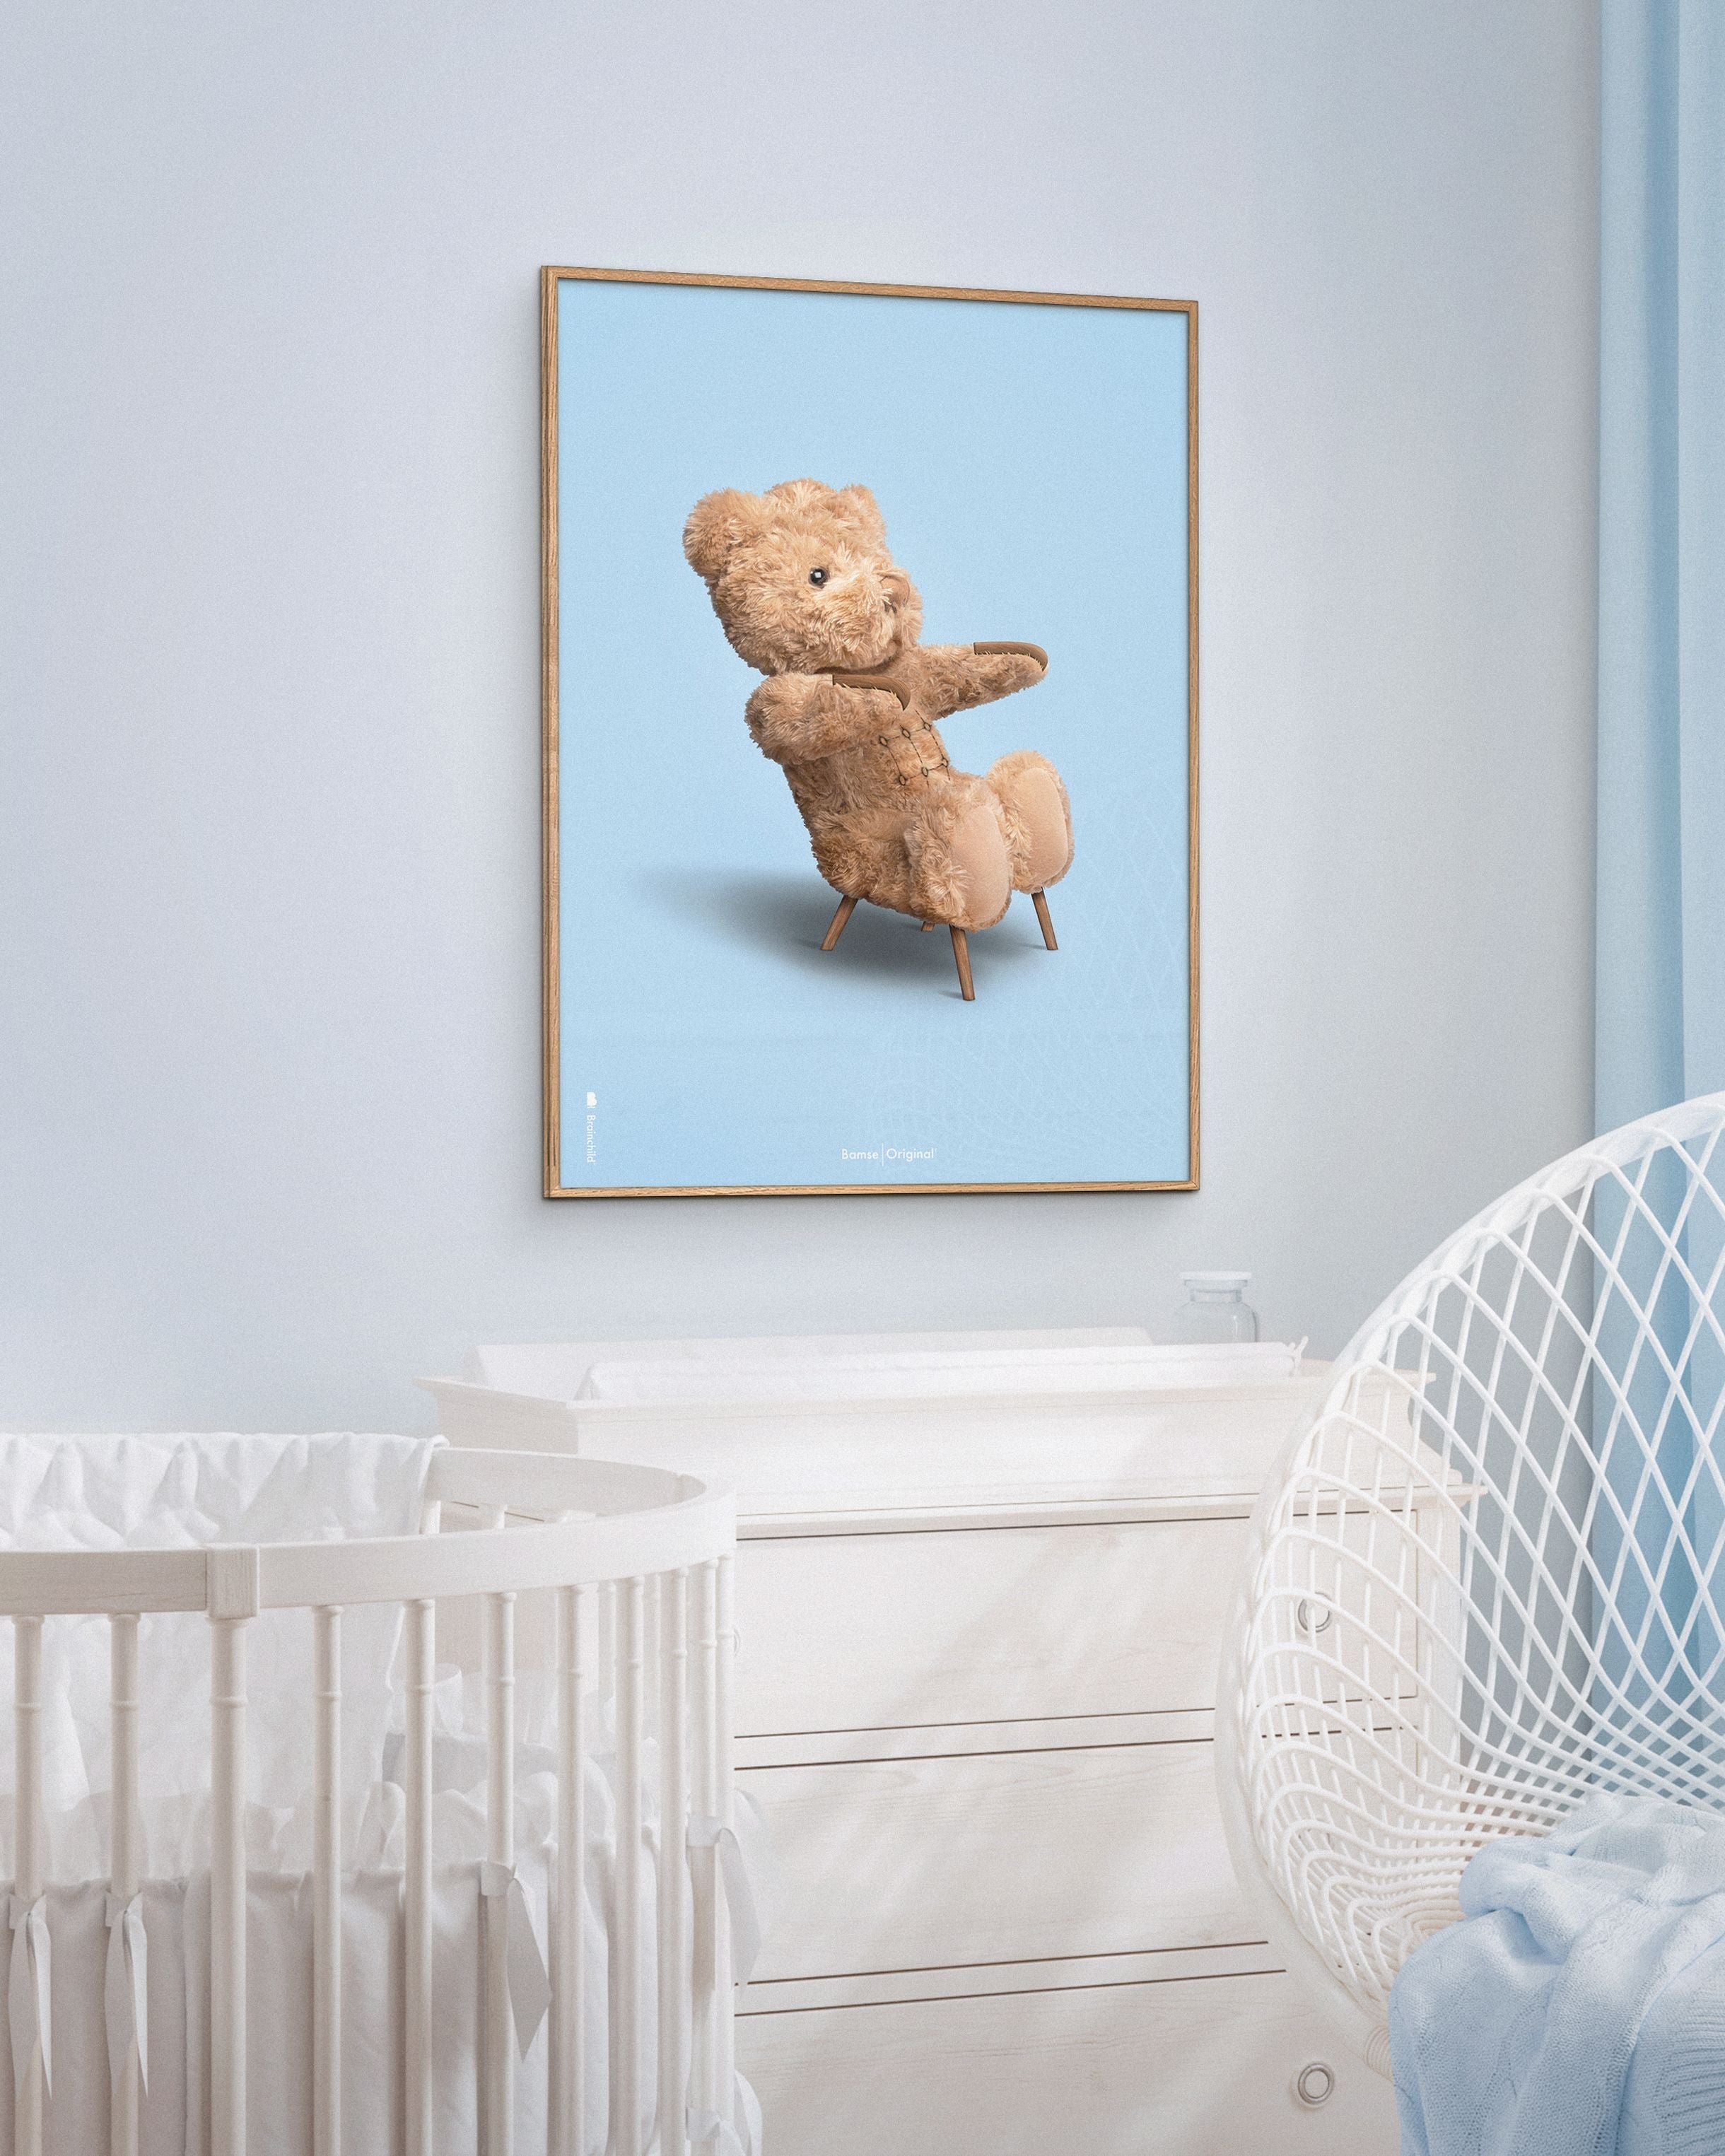 Brainchild Teddy Bear Classic Poster Frame lavet af let træ ramme 70x100 cm, lyseblå baggrund